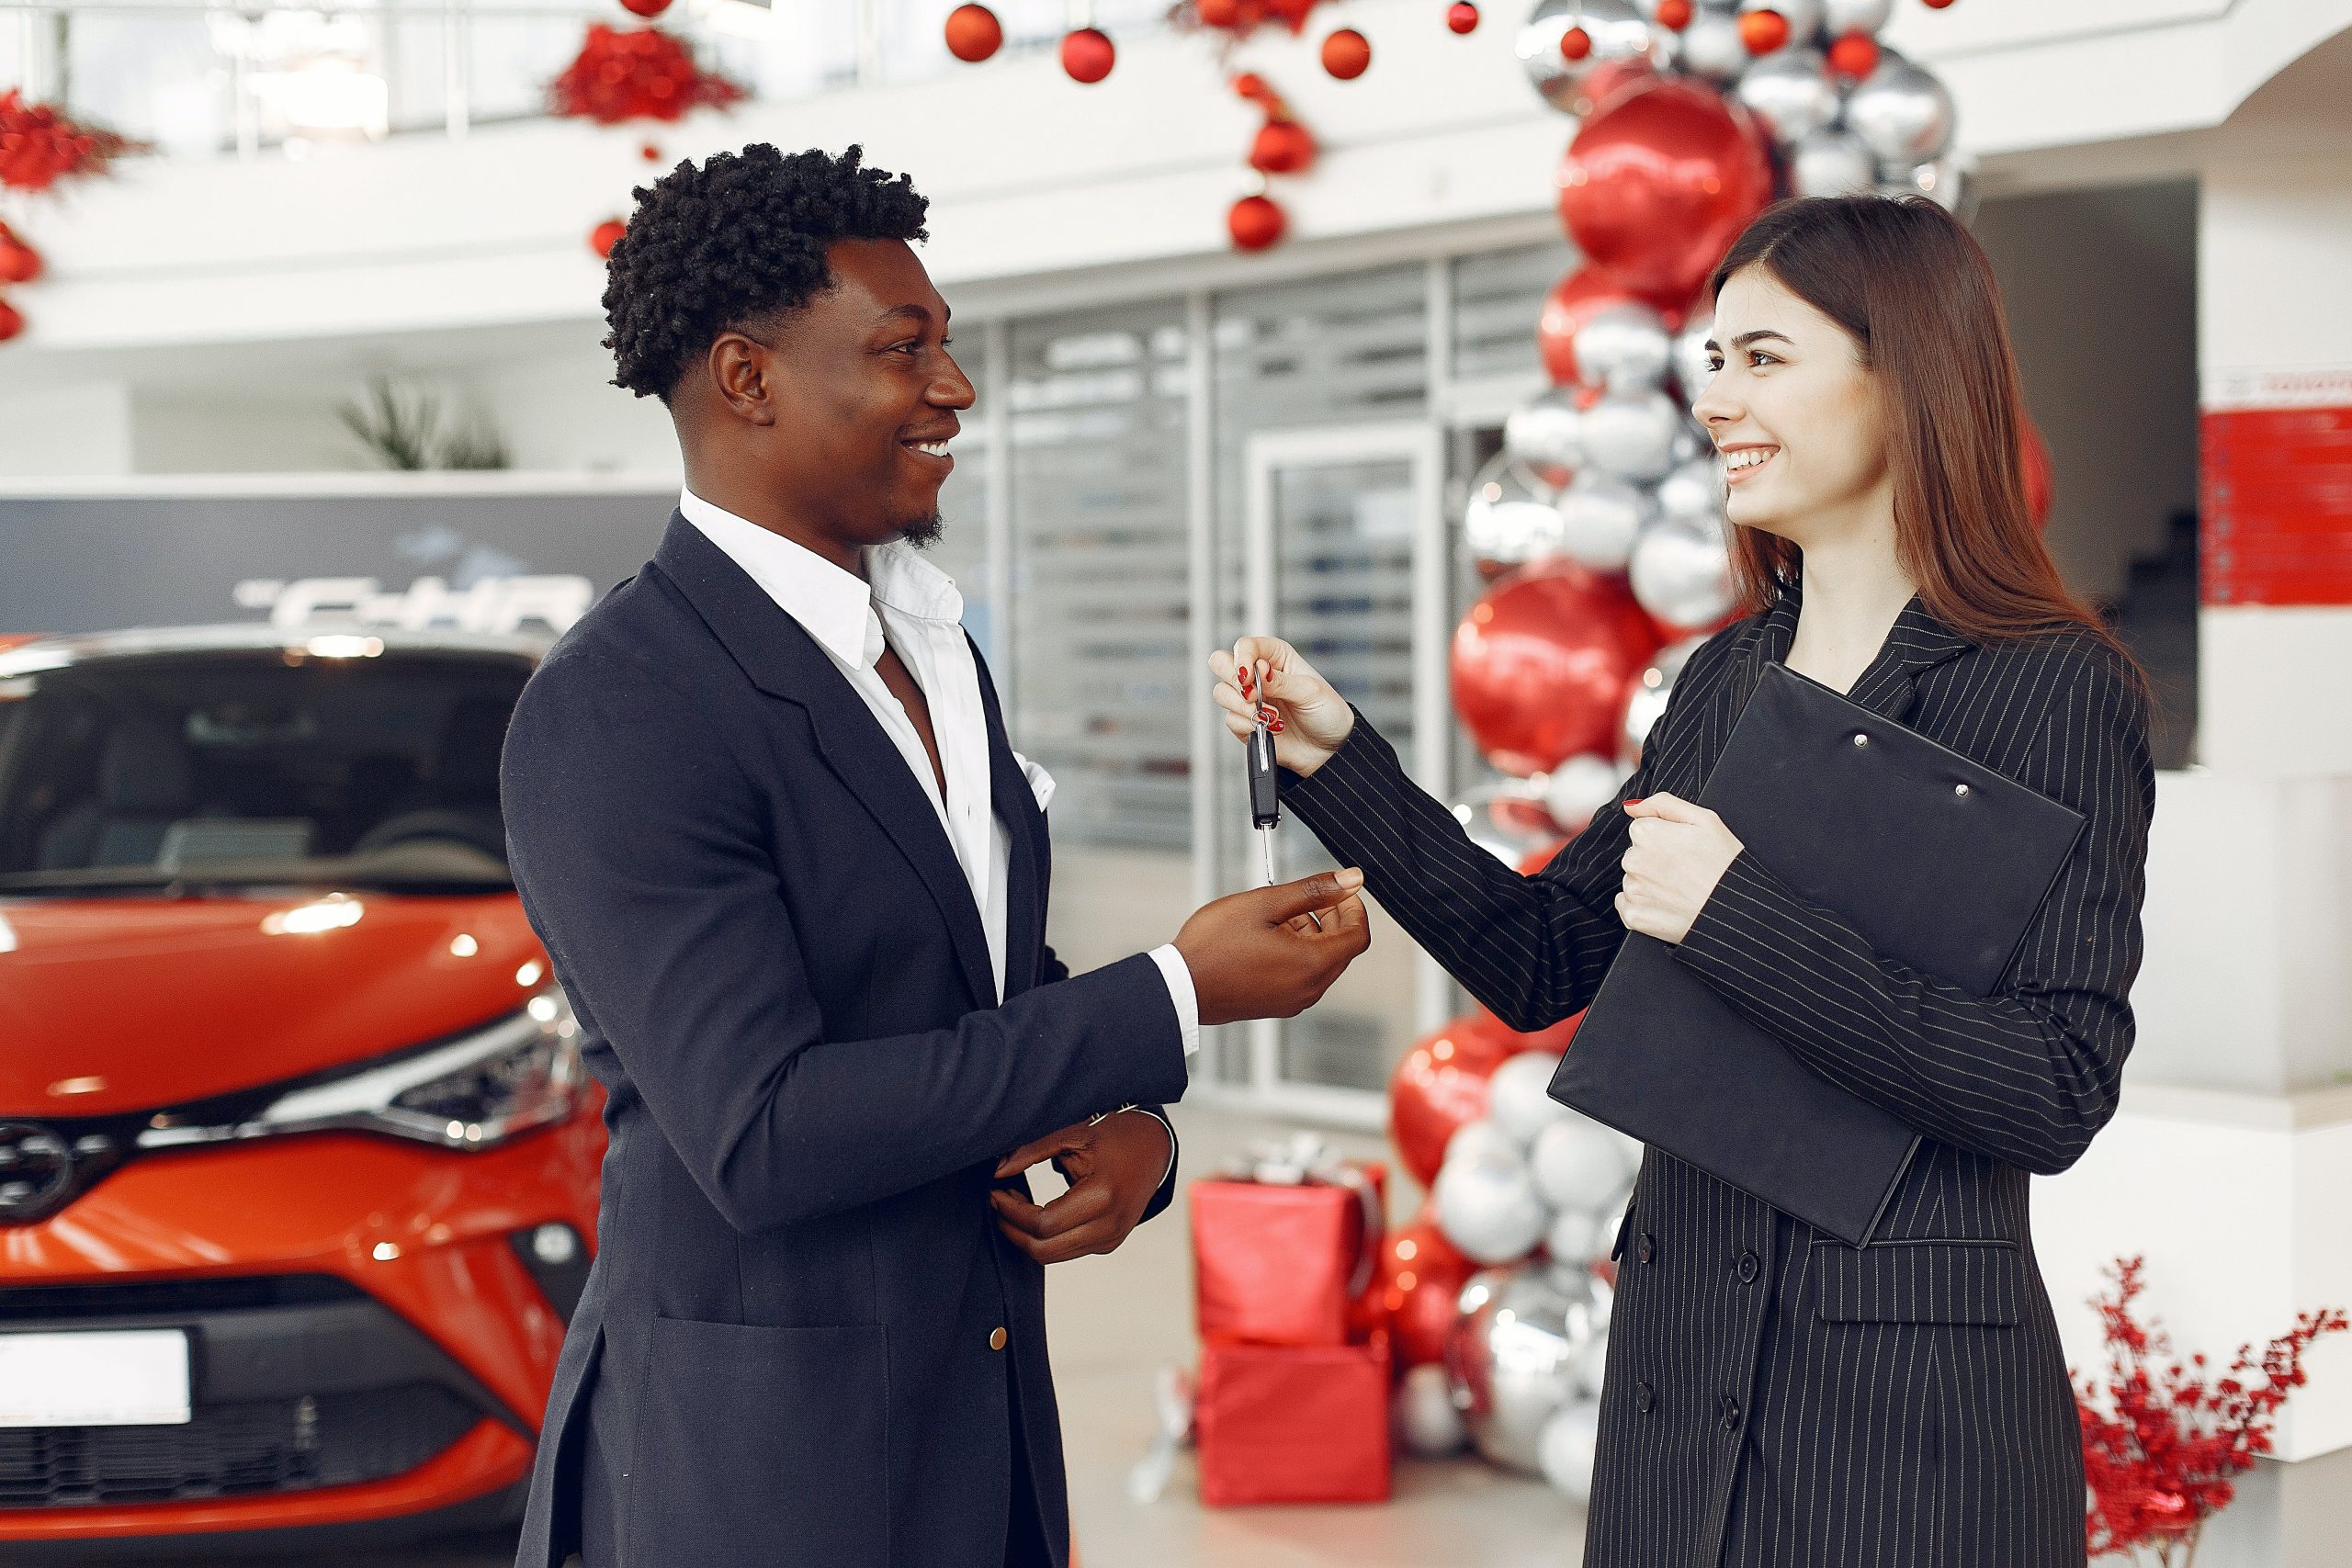 Renting de coches para empresas: ahorro, mantenimiento y ventajas fiscales